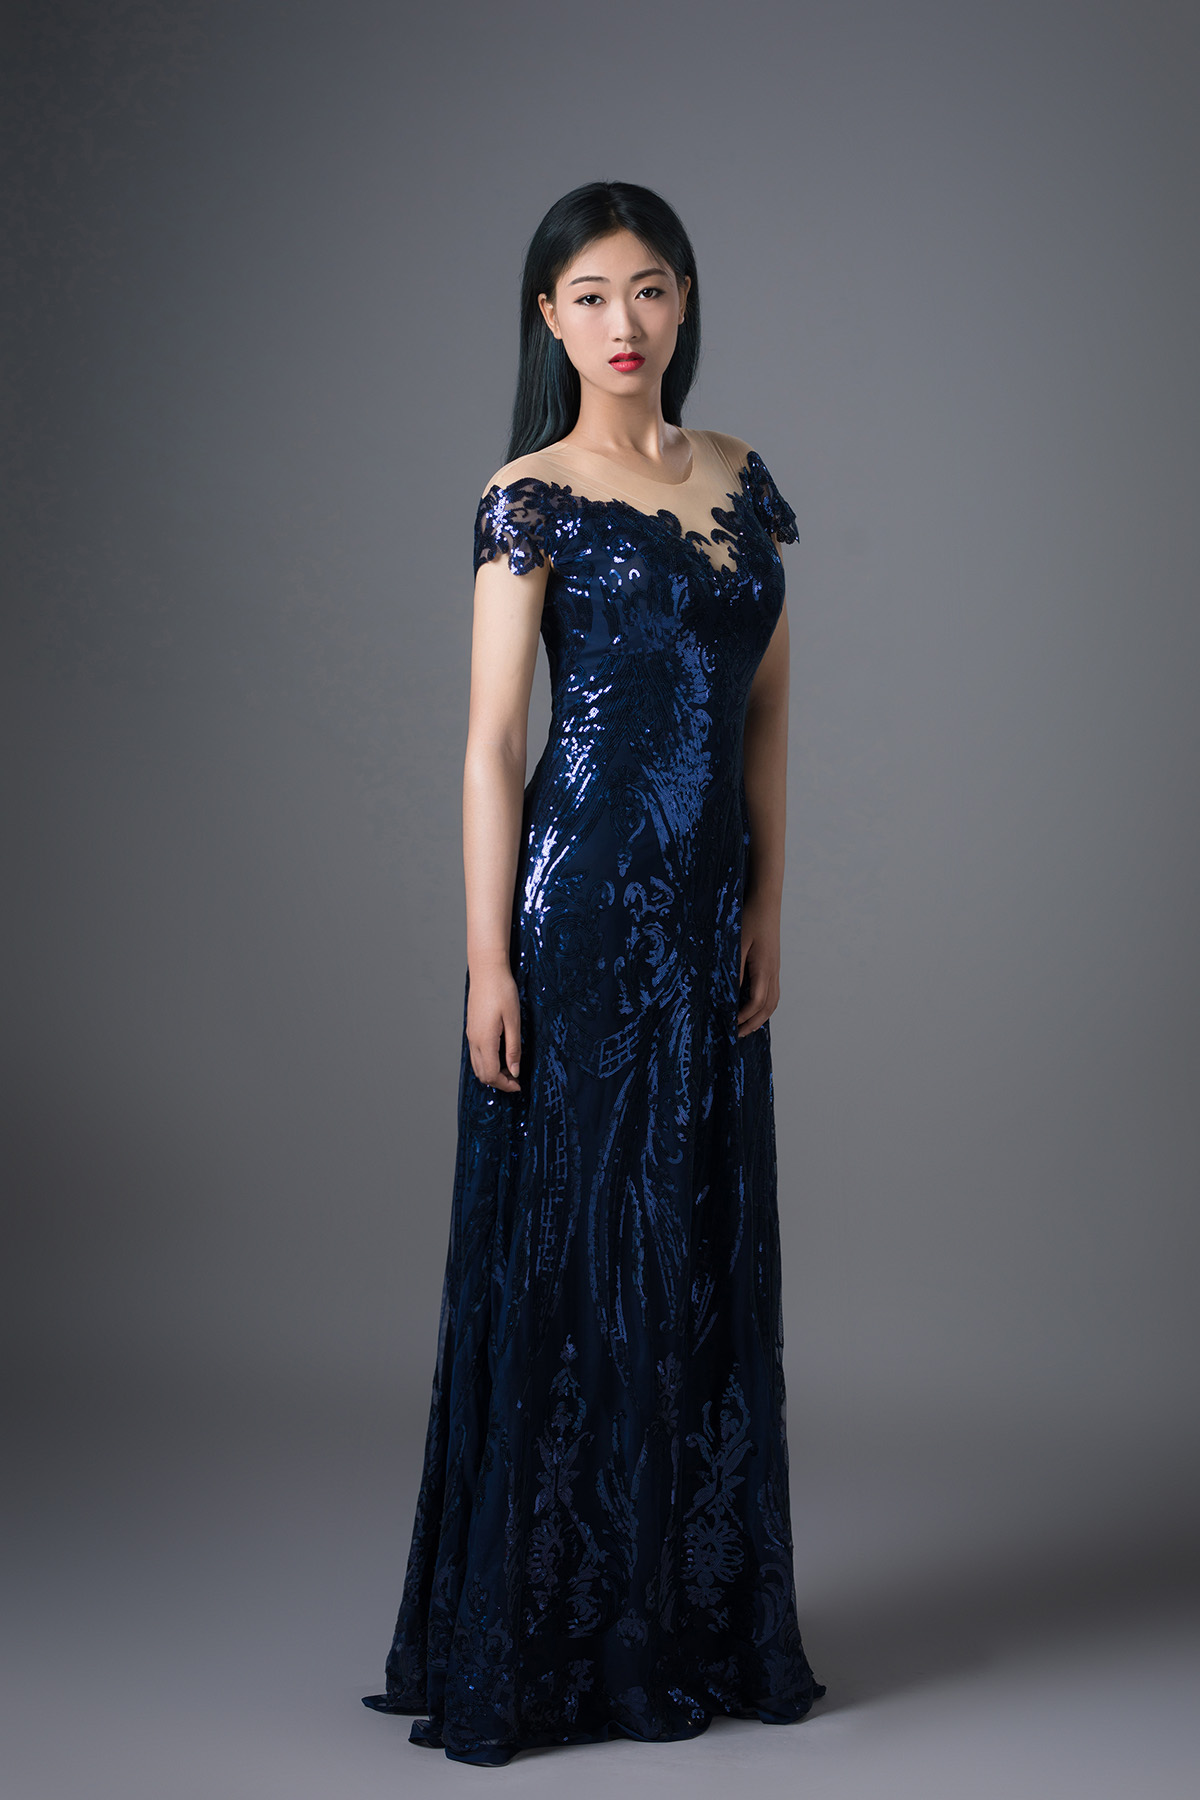 谷裘为上海音乐学院段冬晴设计蓝色斜肩演出艺术考试比赛礼服